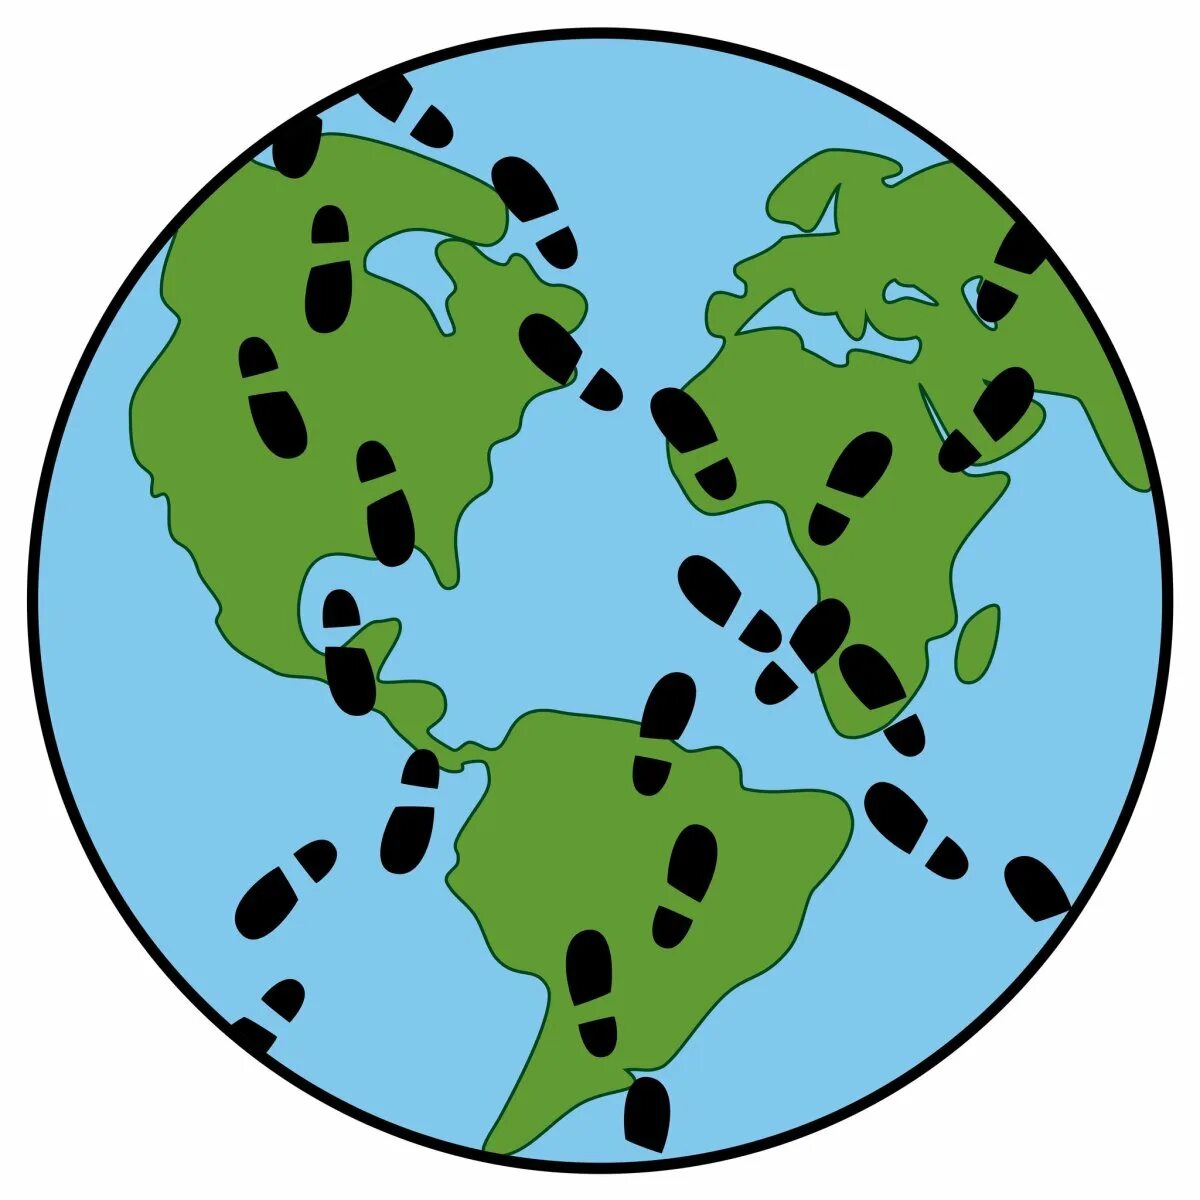 Шаров след в след. Следы на земле рисунок. Макет земного шара со следами. Земной шар и следы. Земной шар со следами человека.